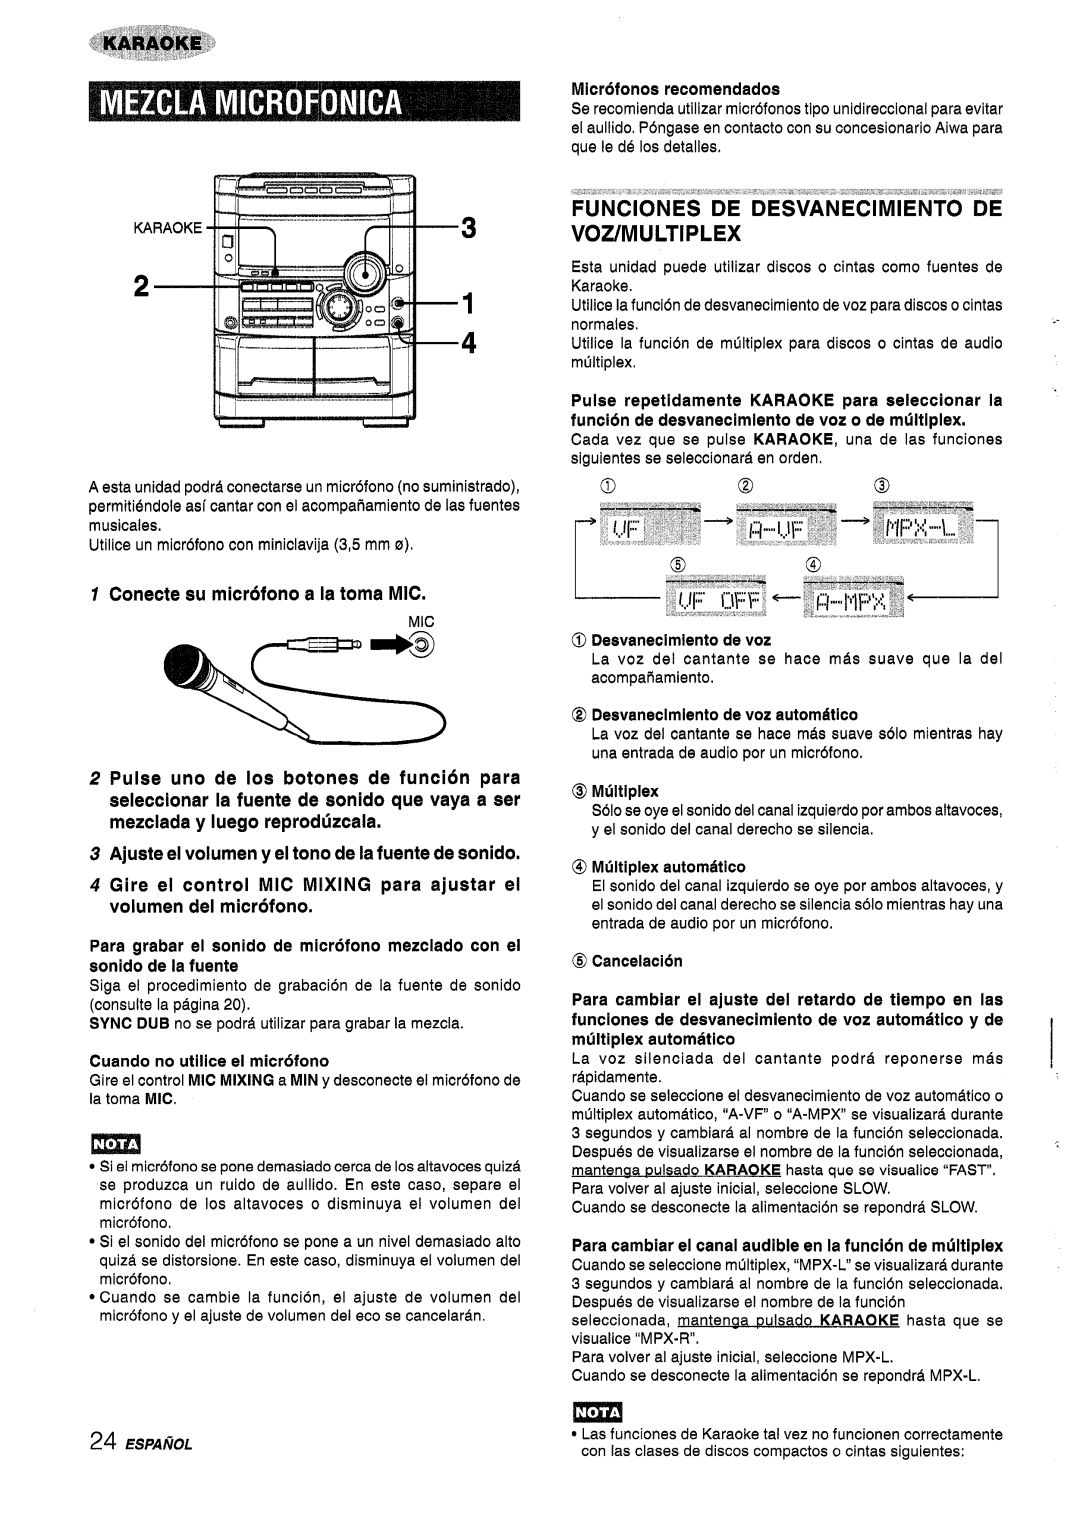 Sony NSX-A767 manual FUNClONES DE DESVANECIMIENTO DE VOZ/MULTIPLEX, Ajuste el volumen y el tono de la fuente de sonido 